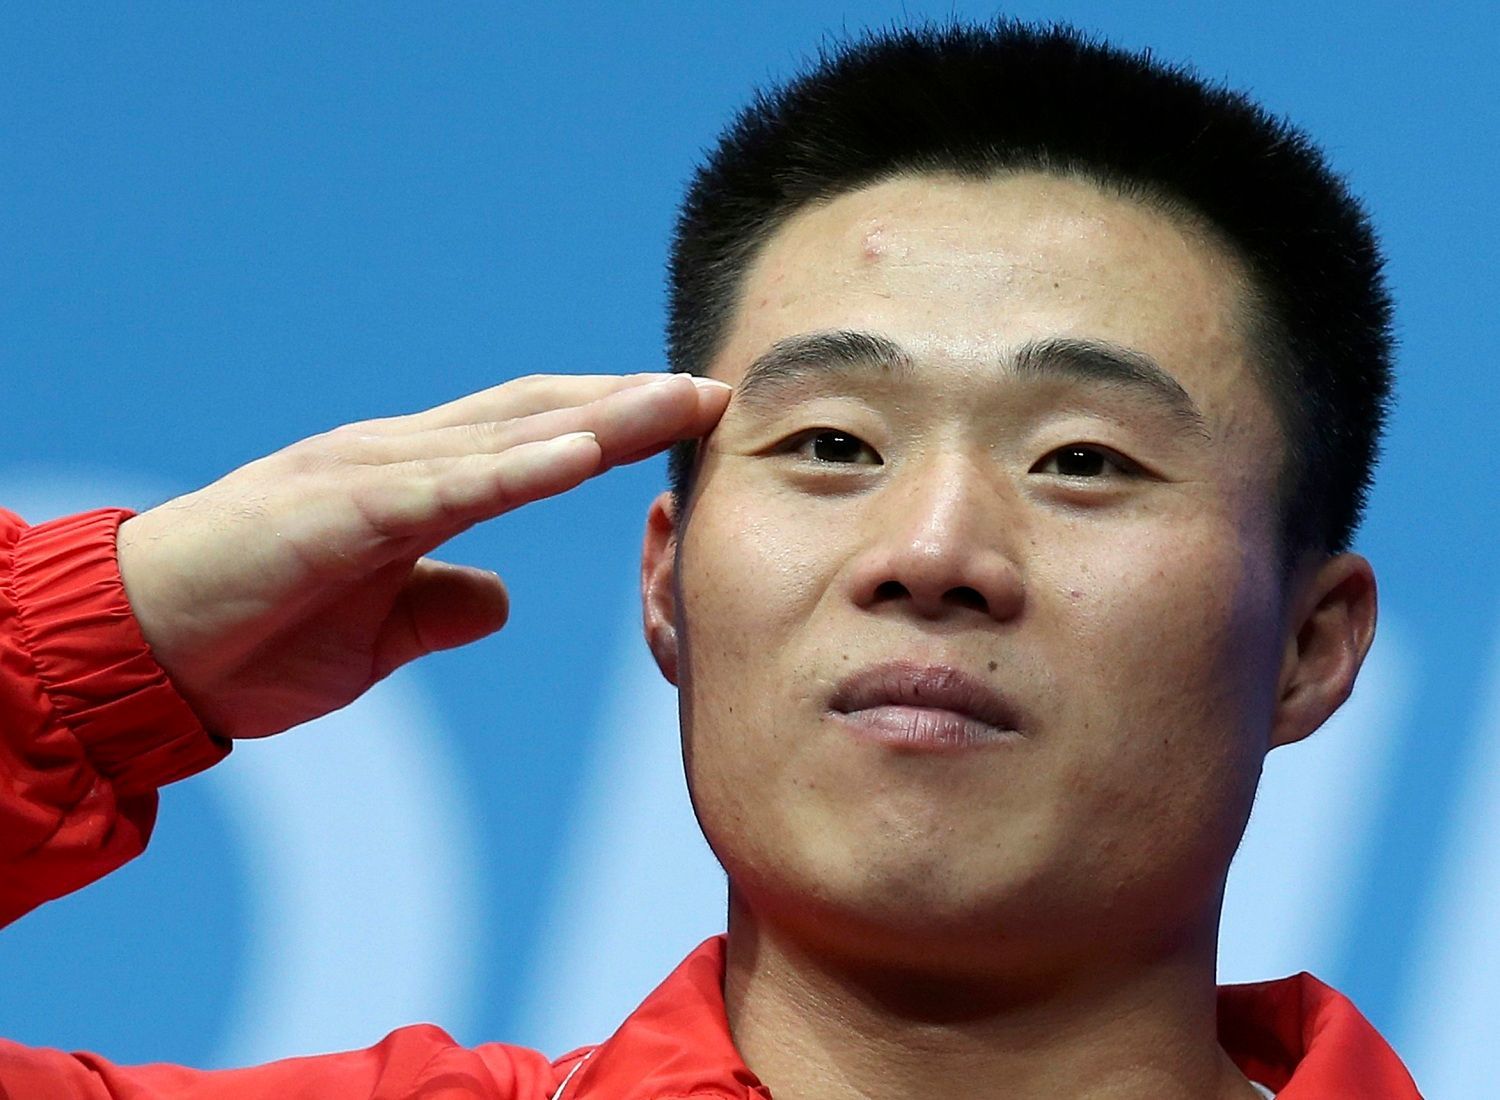 Severokorejský vzpěrač Guk Kim Un salutuje se zlatou medailí po vítězství v kategorii mužů do 62 kg na OH 2012 v Londýně.